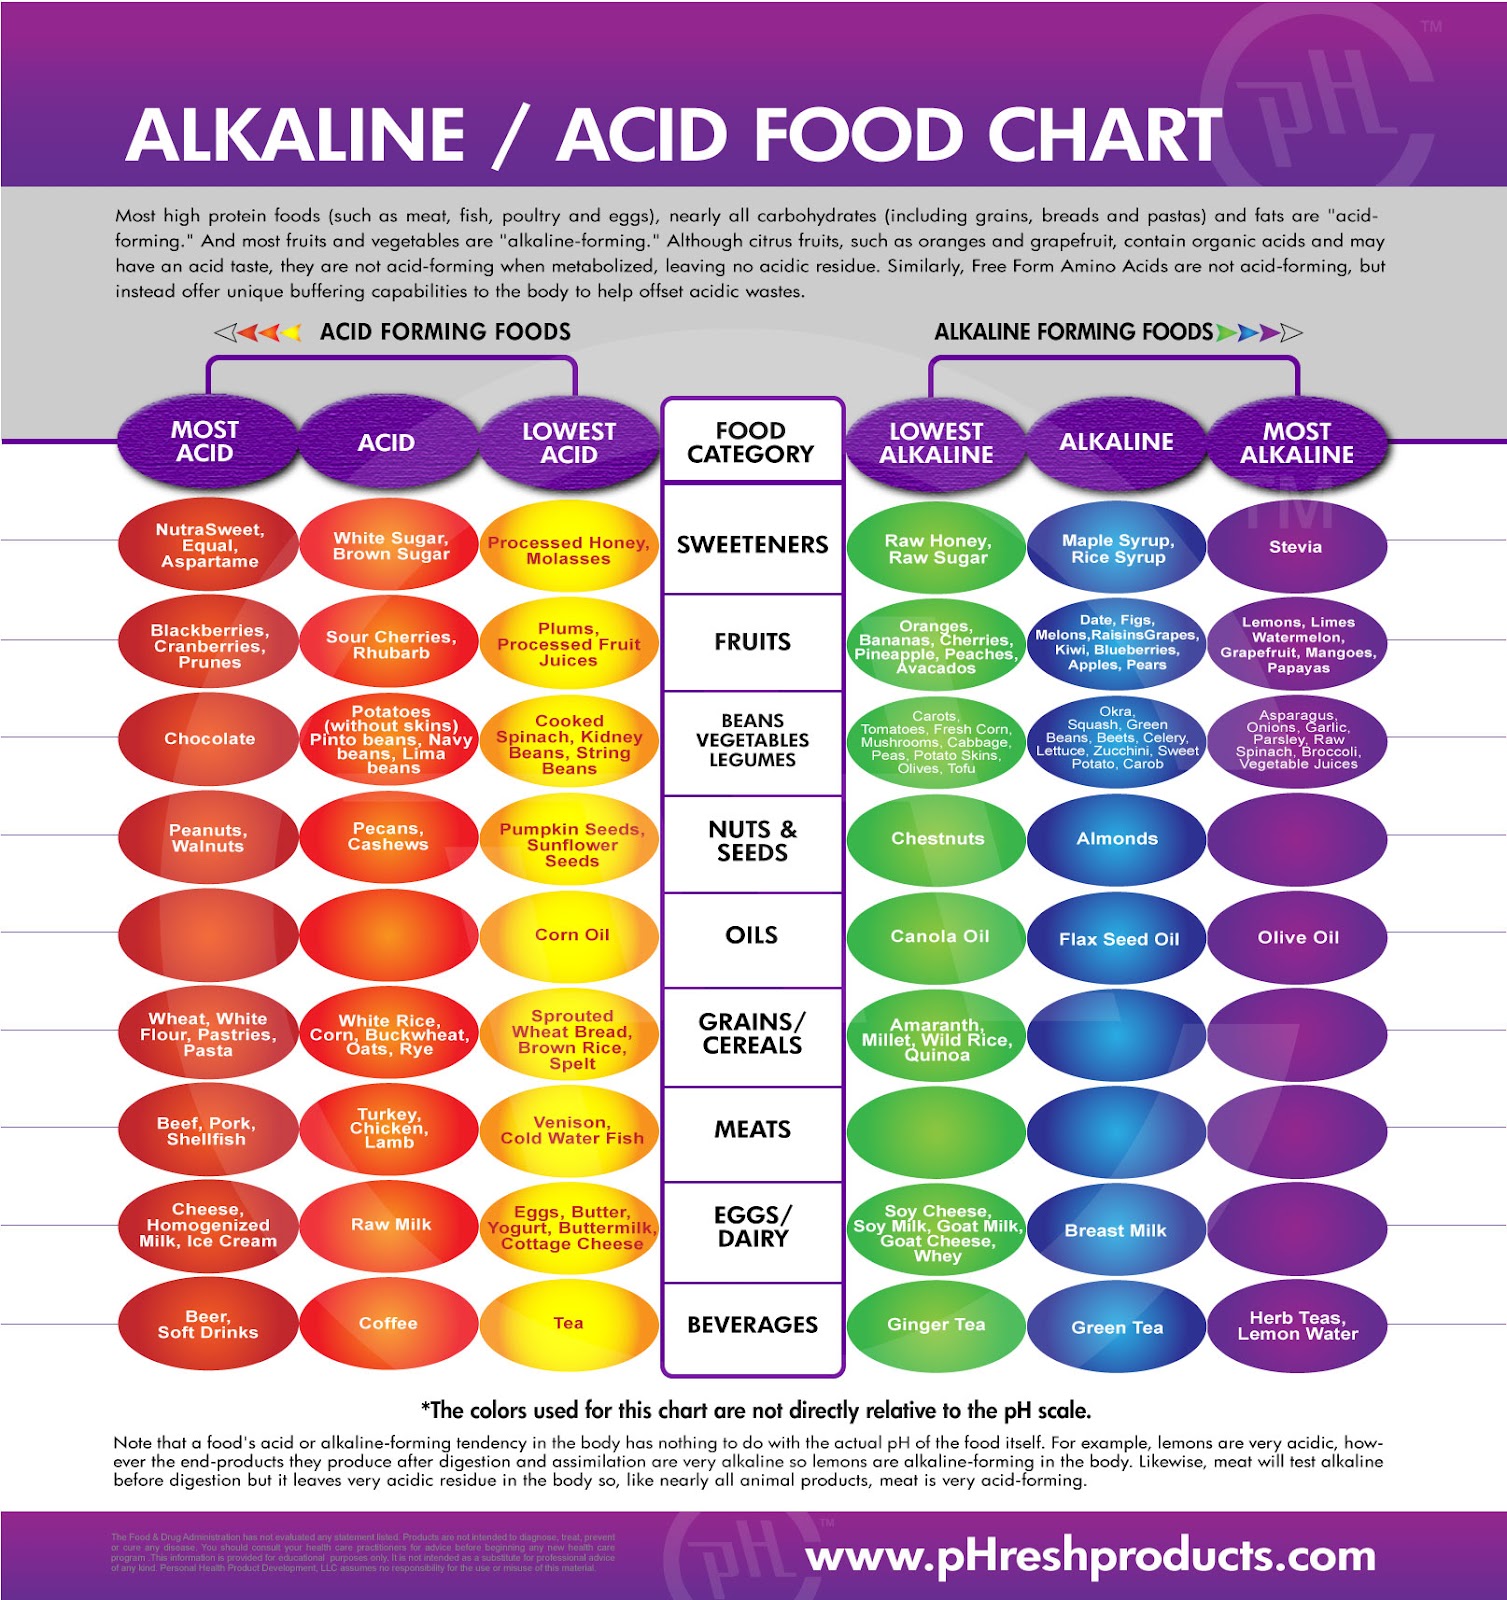 healthkinect: Alkaline foods vs. Acidic foods